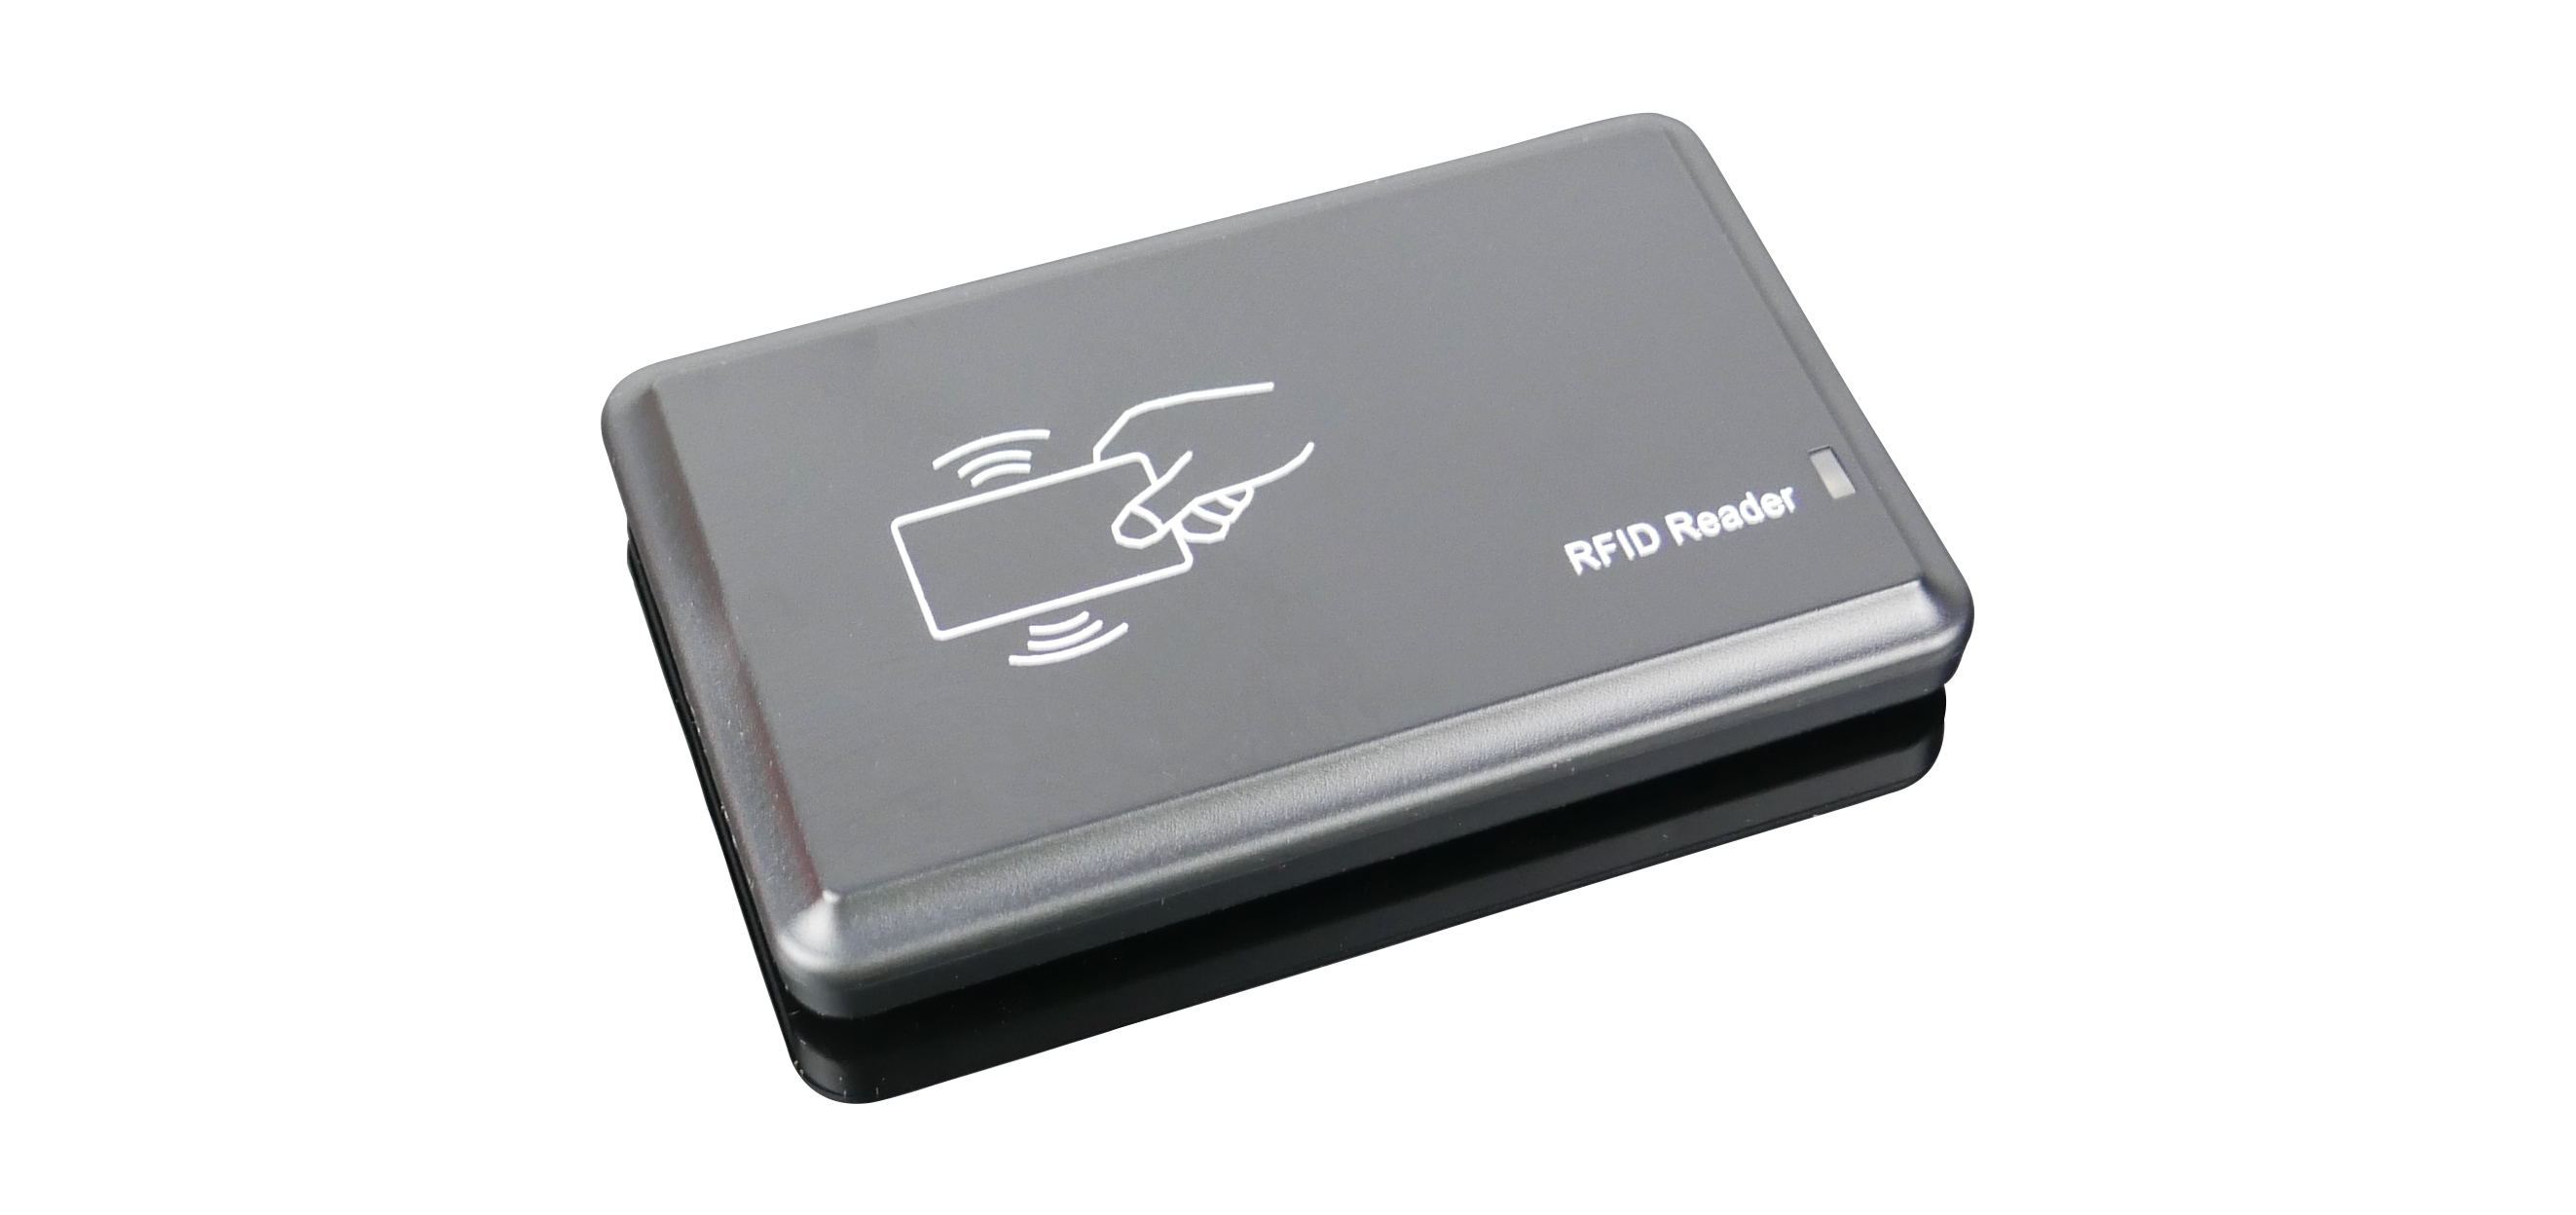 Przewodowe urządzenie do odczytu tagów RFID HD-RD20X